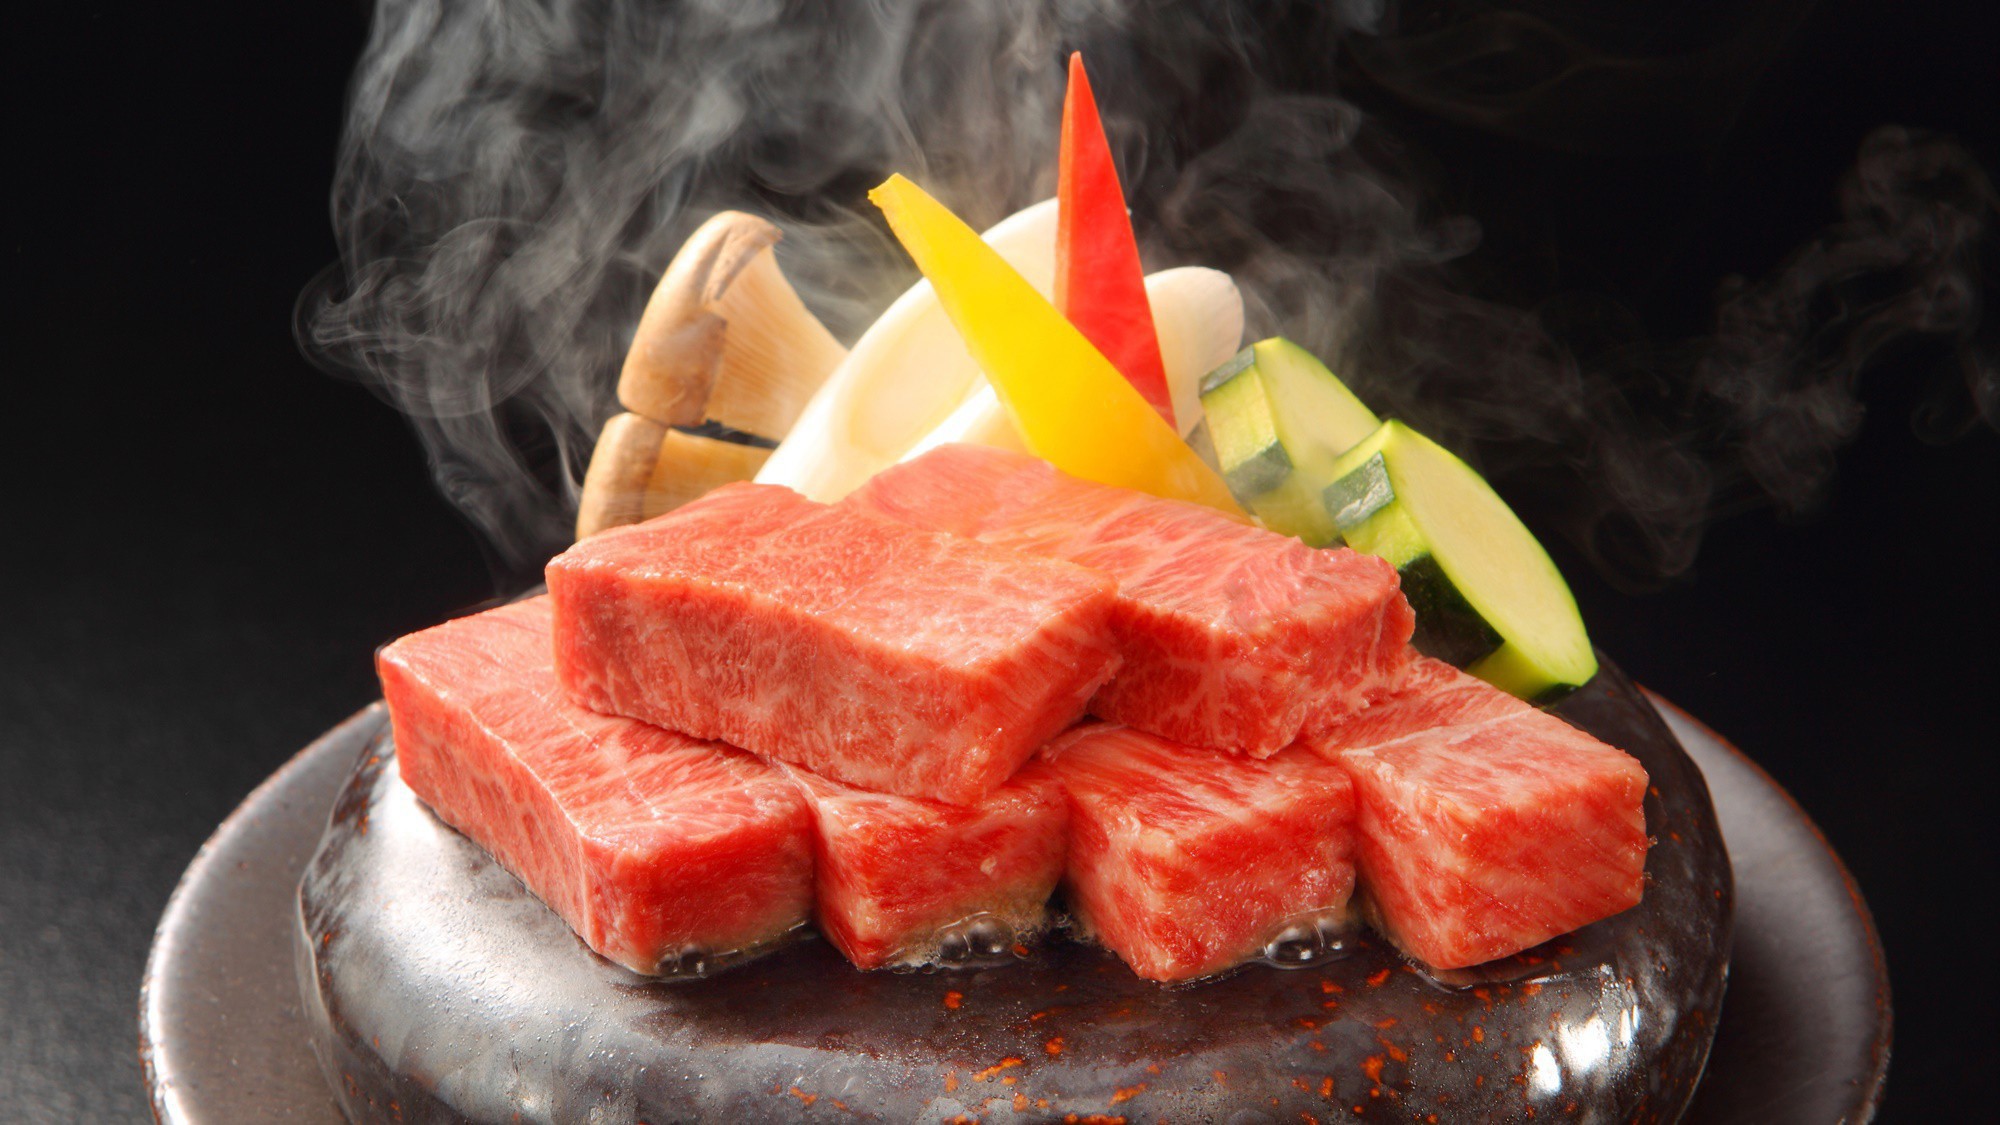 【山形牛ステーキ】上質の山形牛ステーキを石焼で匂い、音で贅沢に。※旬の素材により料理内容異なります